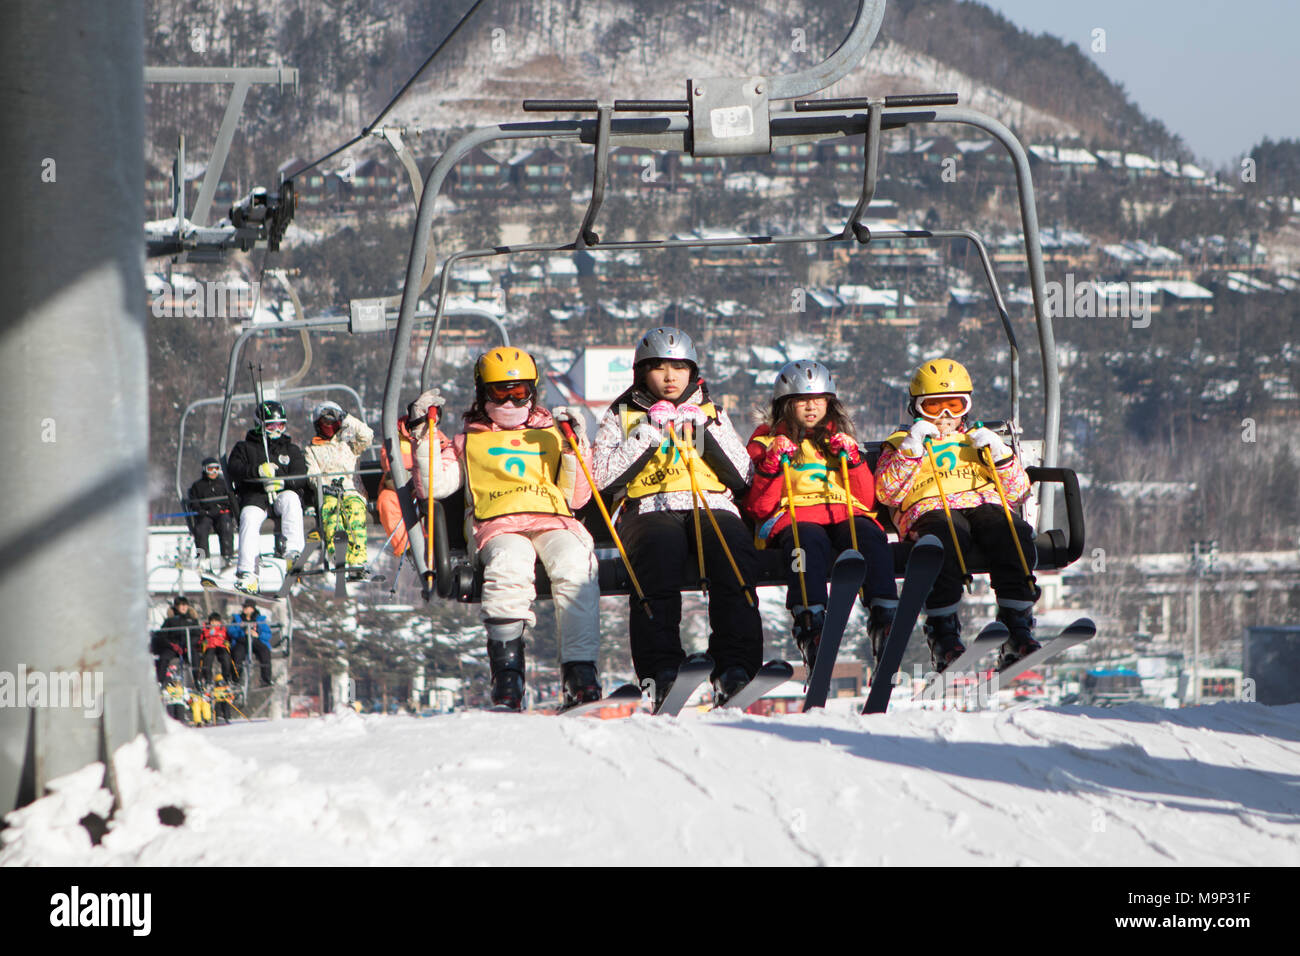 Un gruppo di quattro bambini è arrivare alla seggiovia stazione superiore della bunny pendio a Yongpyong. Yongpyong (Dragon Valley) Ski Resort è una stazione sciistica in Corea del Sud, situato in Daegwallyeong-myeon, Pyeongchang, Gangwon-do. È il più grande sci e snowboard resort in Corea. Yongpyong ospiterà la tecnica sci alpino eventi per il 2018 Olimpiadi e Paraolimpiadi invernali di Pyeongchang. Alcune scene del 2002 Korean Broadcasting System dramma Sonata di Inverno sono state filmate presso il resort. Foto Stock